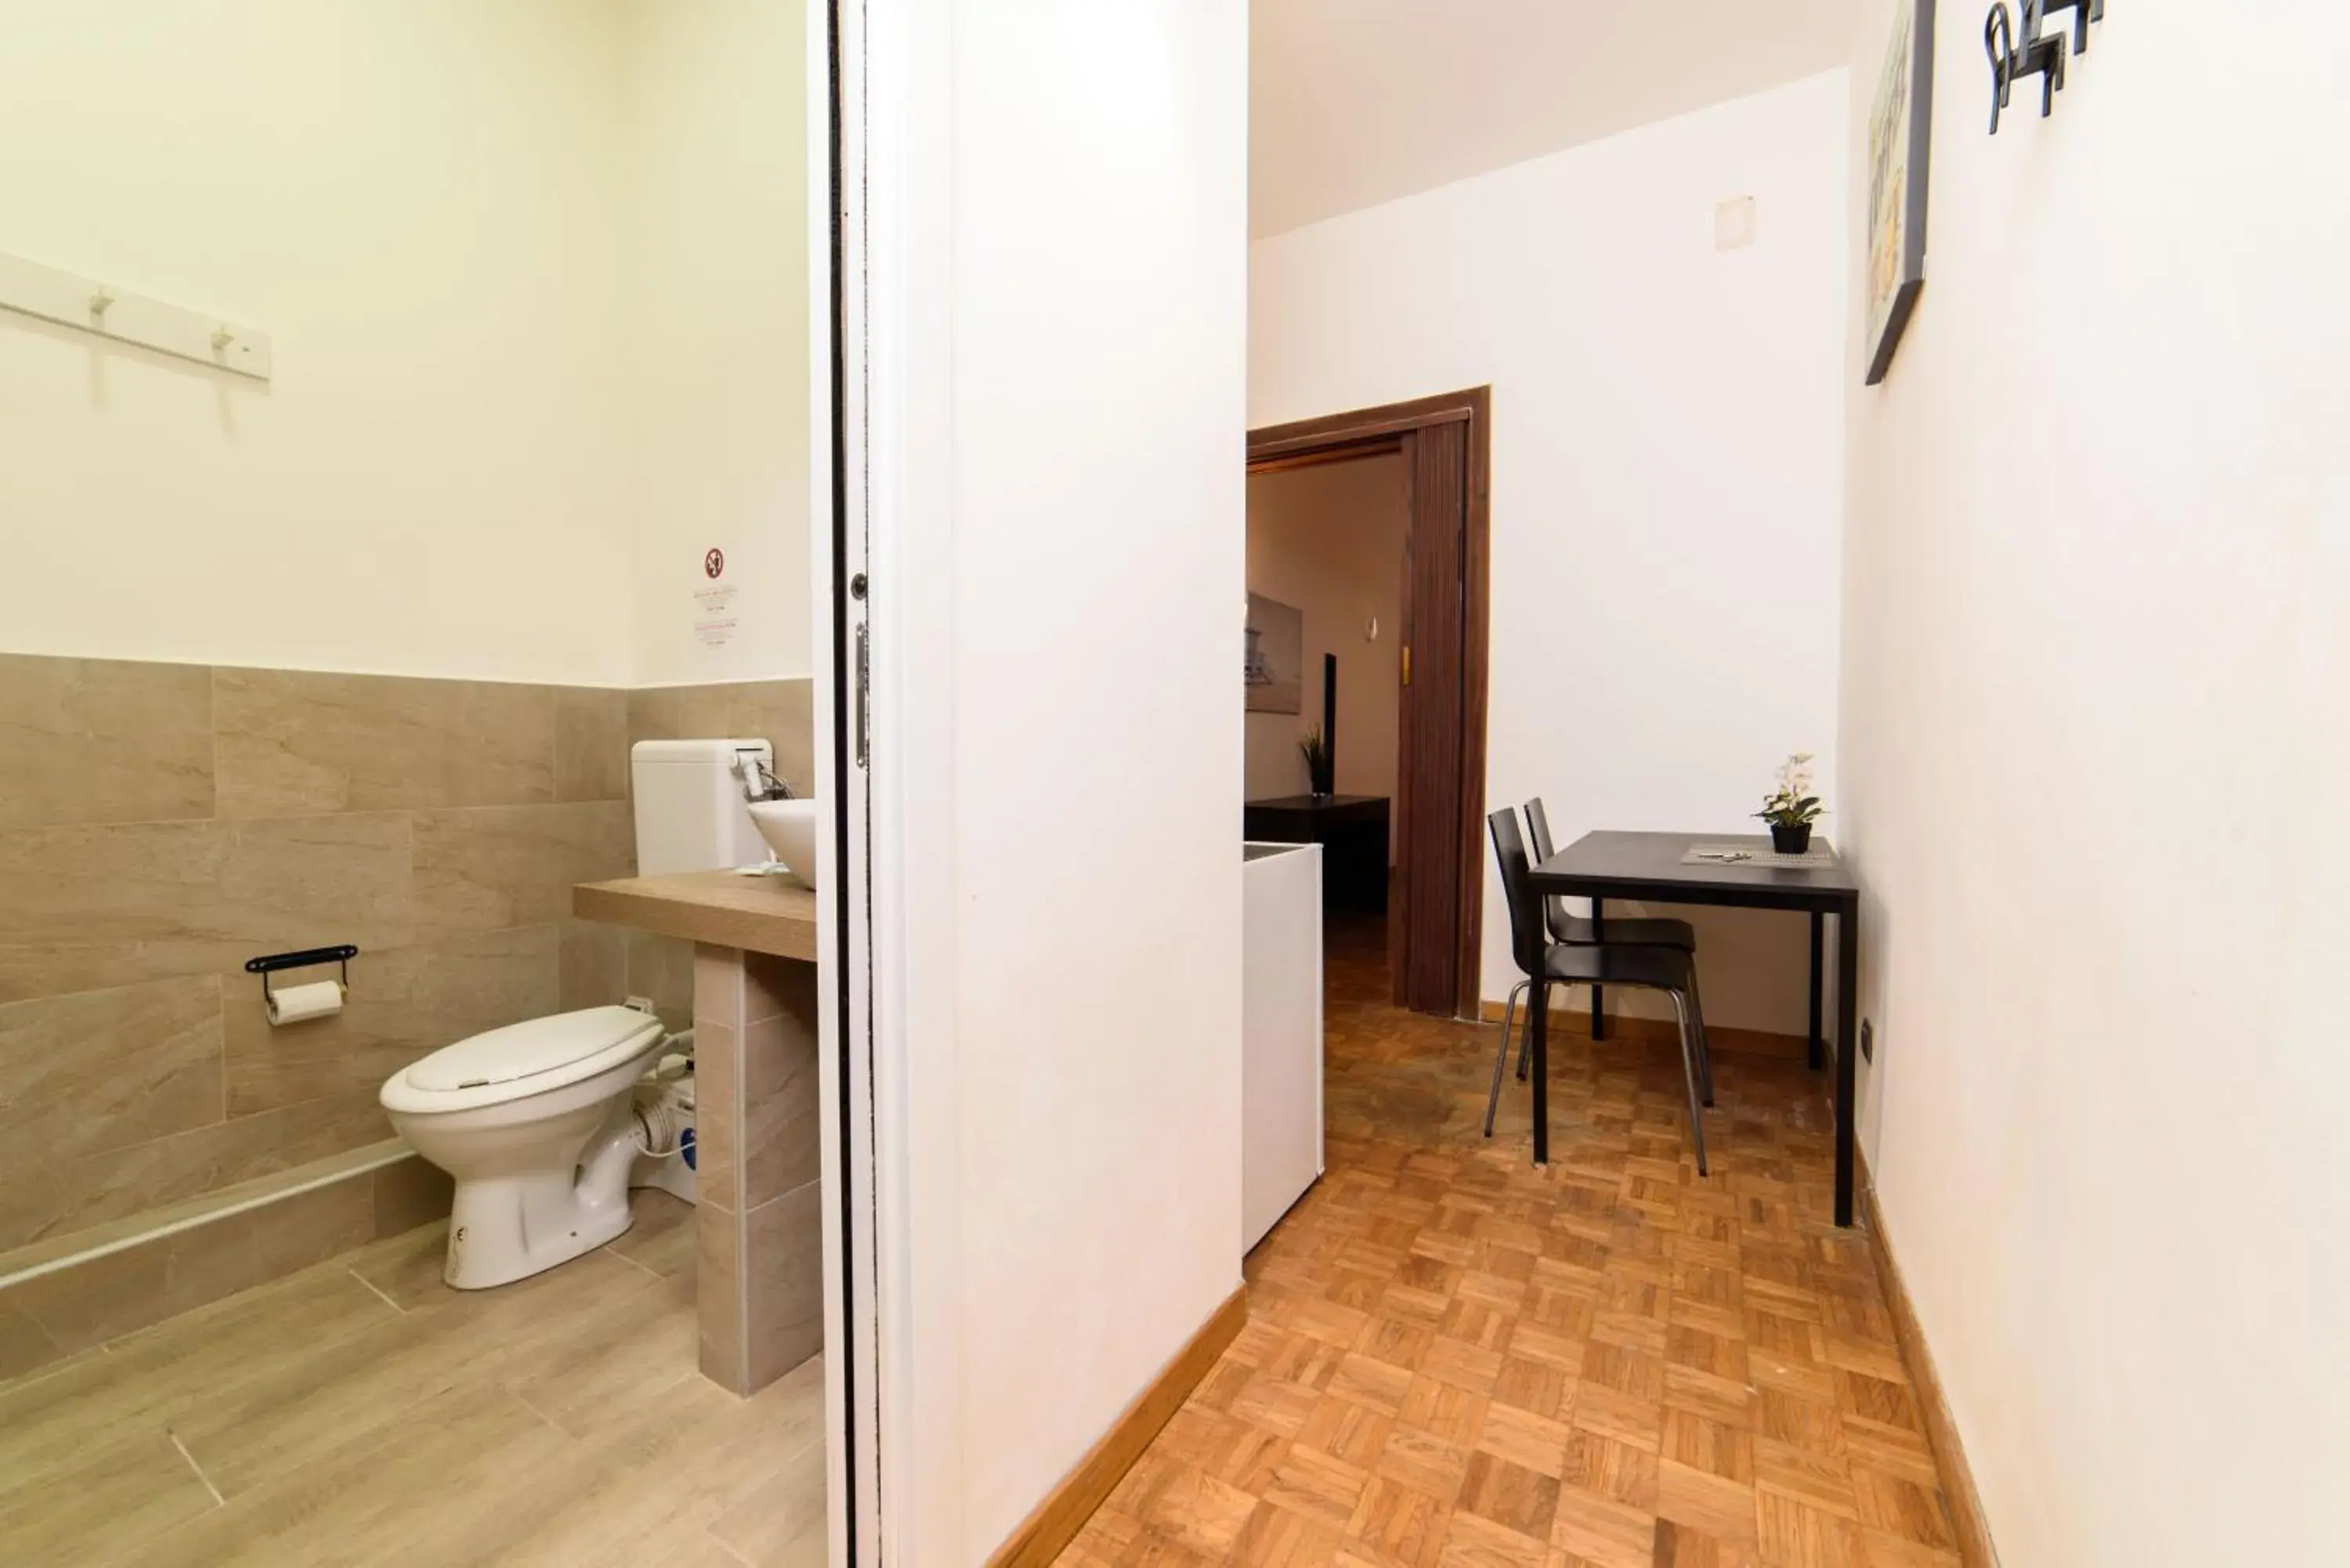 Toilet, Bathroom in Inside Chiaia Rooms